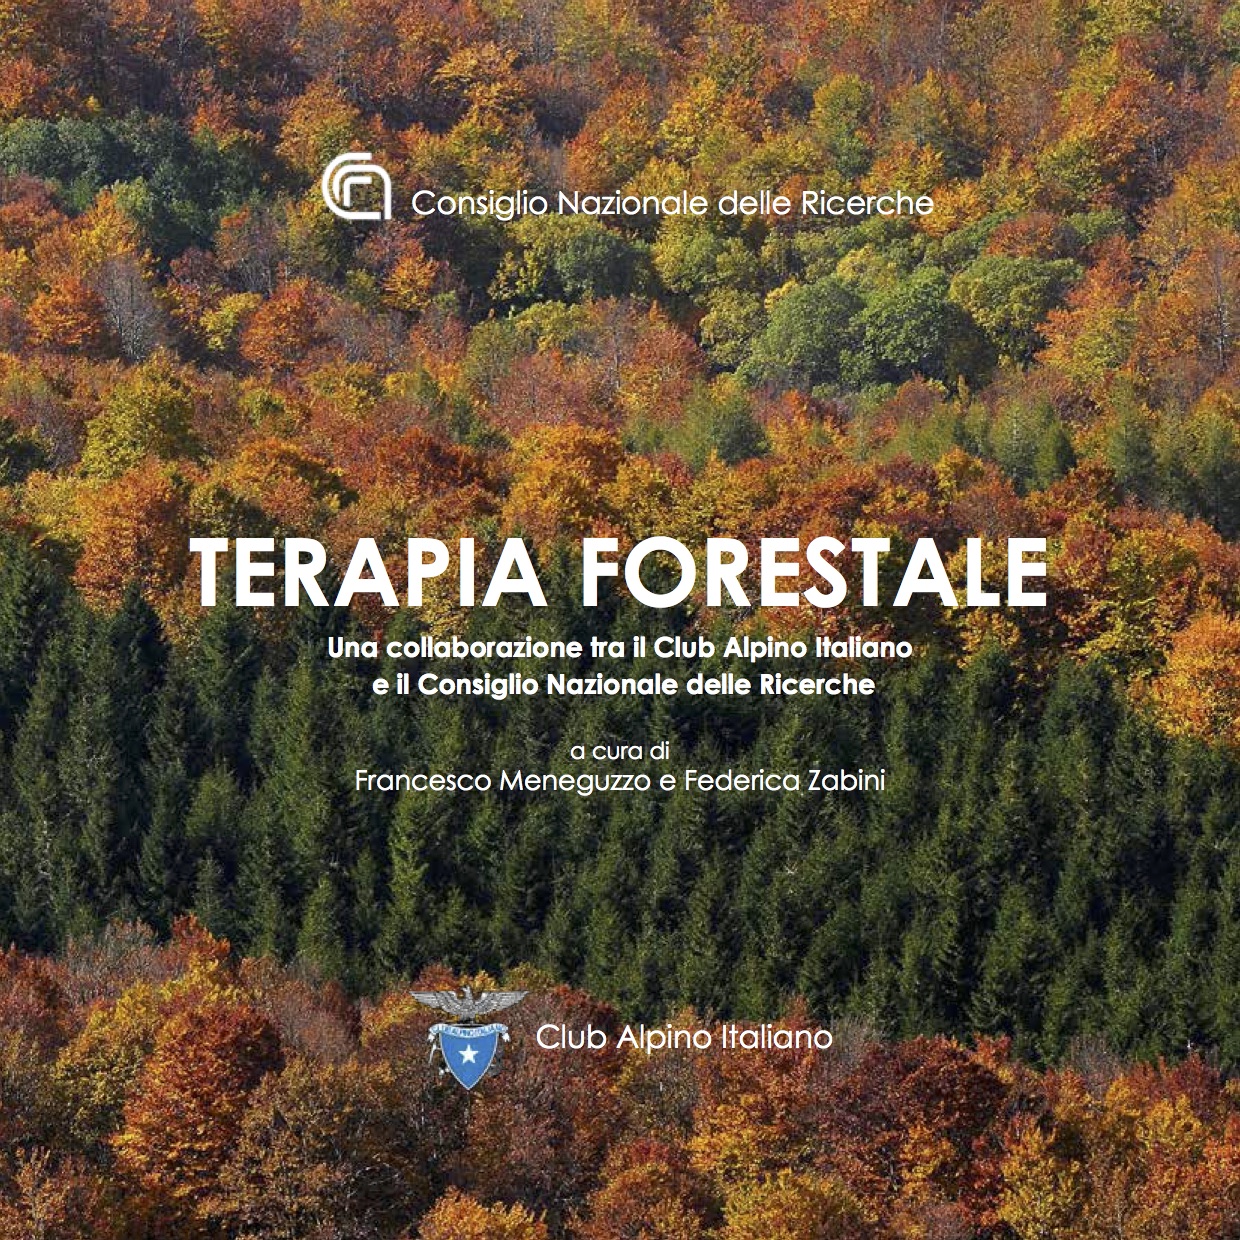 Terapia forestale, ora un libro racconta di cosa si tratta